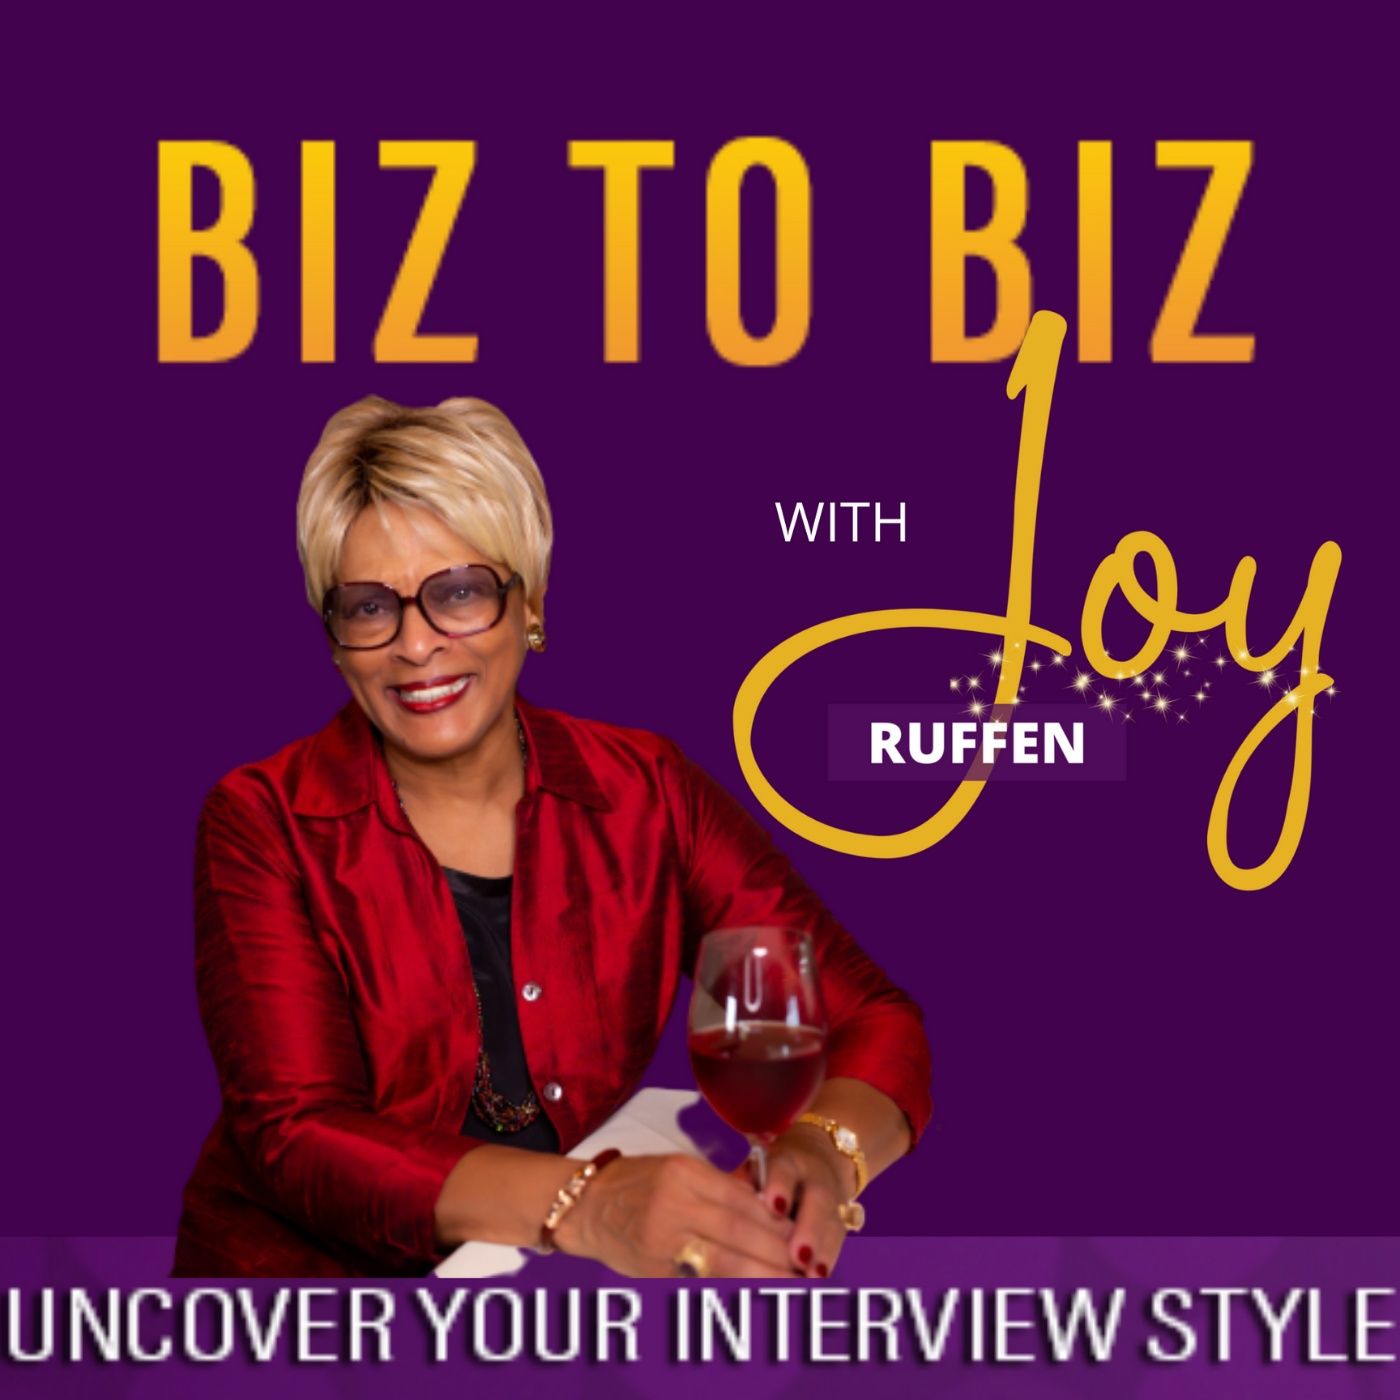 BIZ to BIZ with JOY! – Grow Your Business In Style!